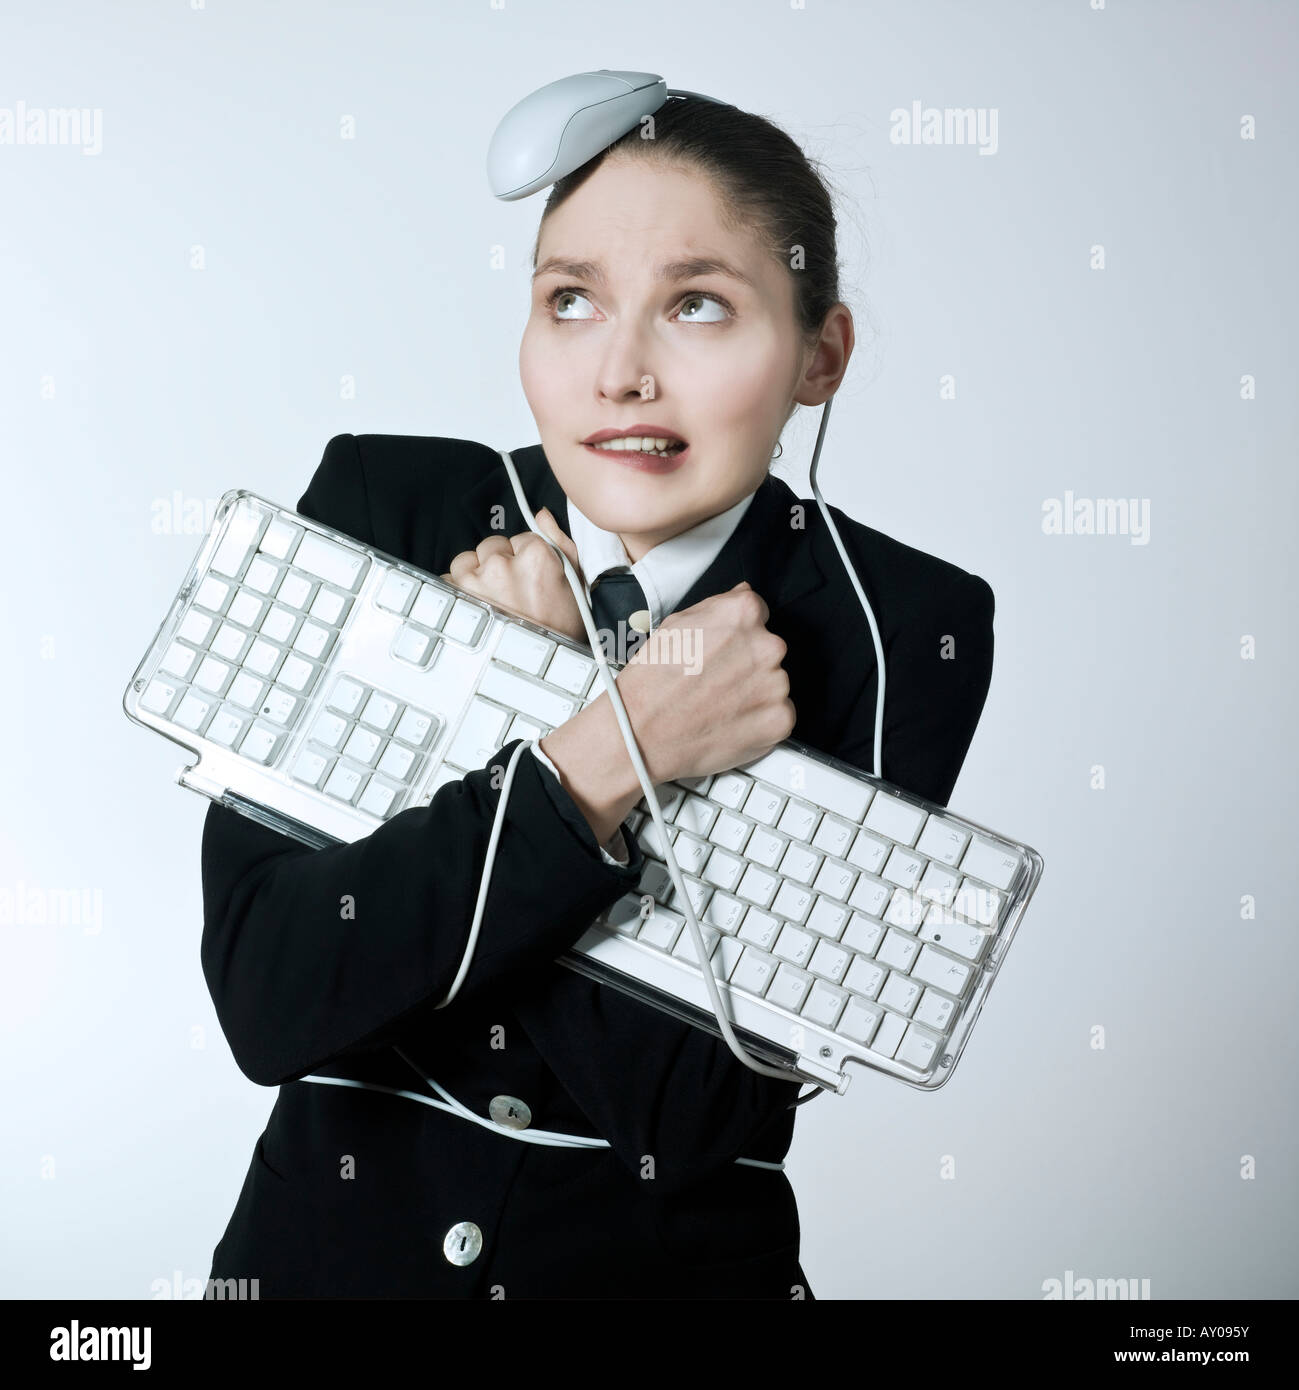 Studio gedreht Porträt einer schönen jungen Frau in einem Kostüm Anzug an eine Computer-Tastatur und wurde Angriff per Mausklick Stockfoto